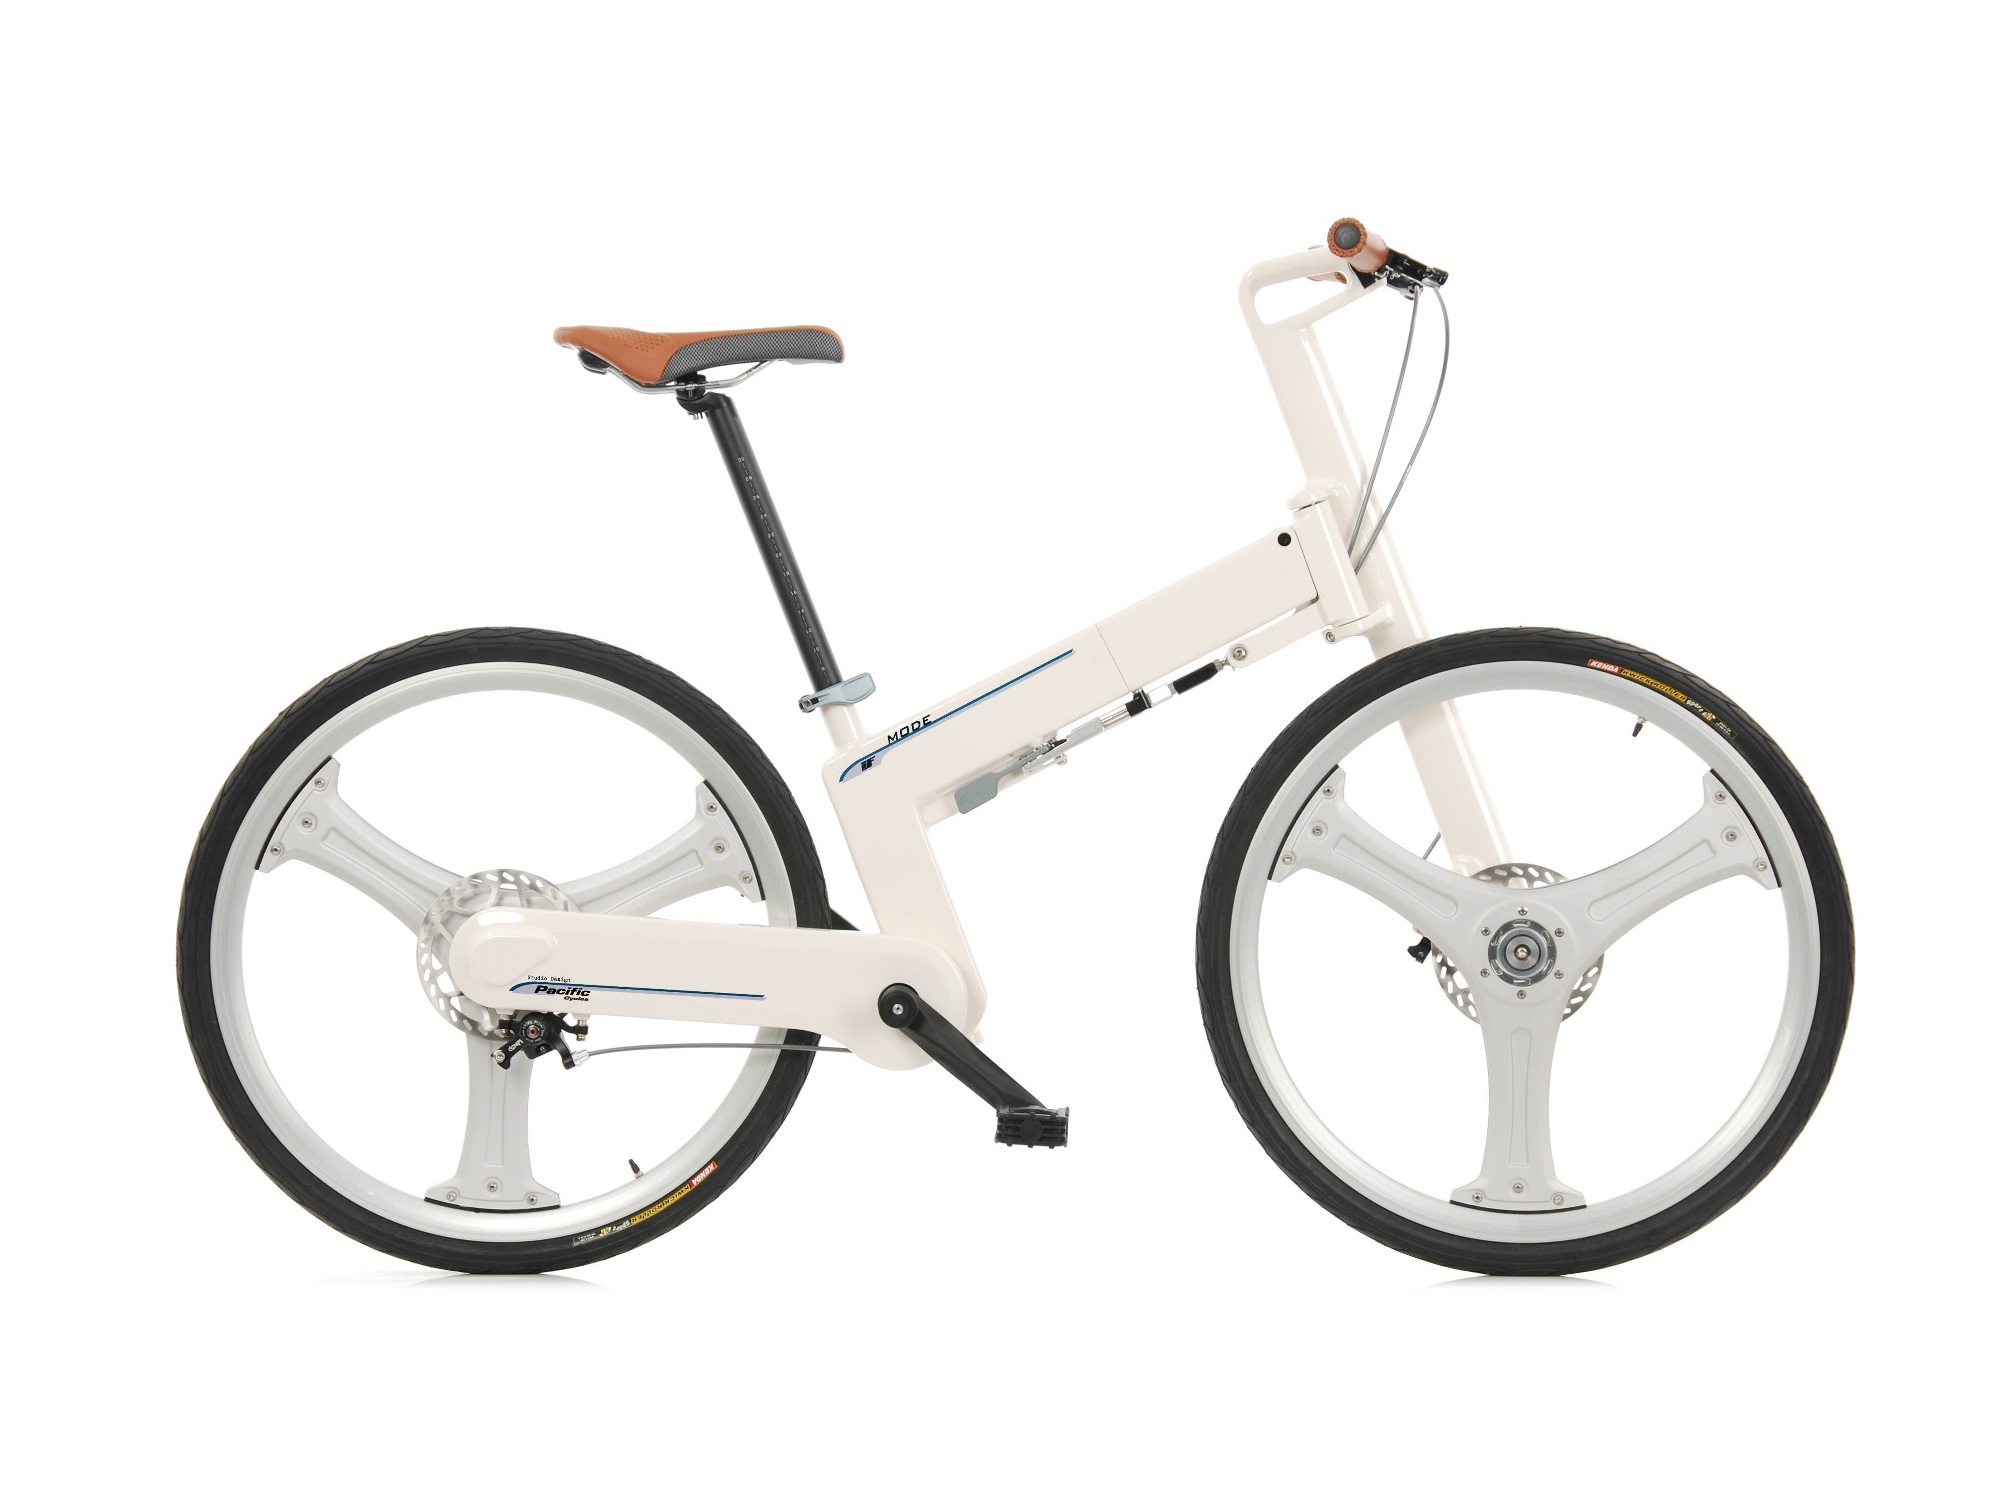 Велосипед для роста 140 см. Велосипед if model Folding Bike. Велосипед с вальным приводом Mifa. Складной велосипед Хаммер. Paratrooper Swissbike x50.